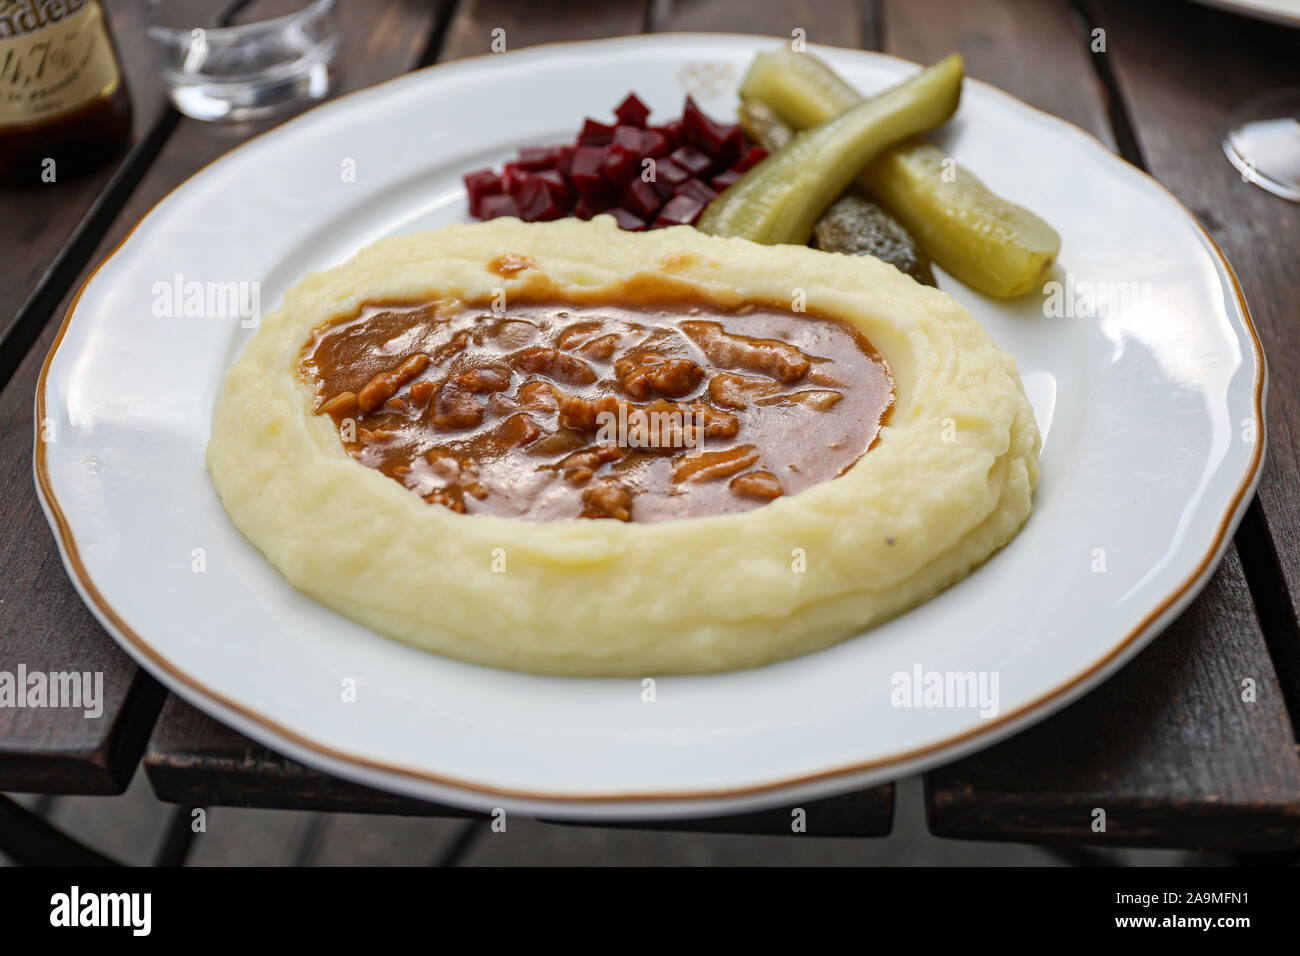 Läskisoosi finlandais traditionnel, avec sauce de porc purée de pommes de terre Banque D'Images